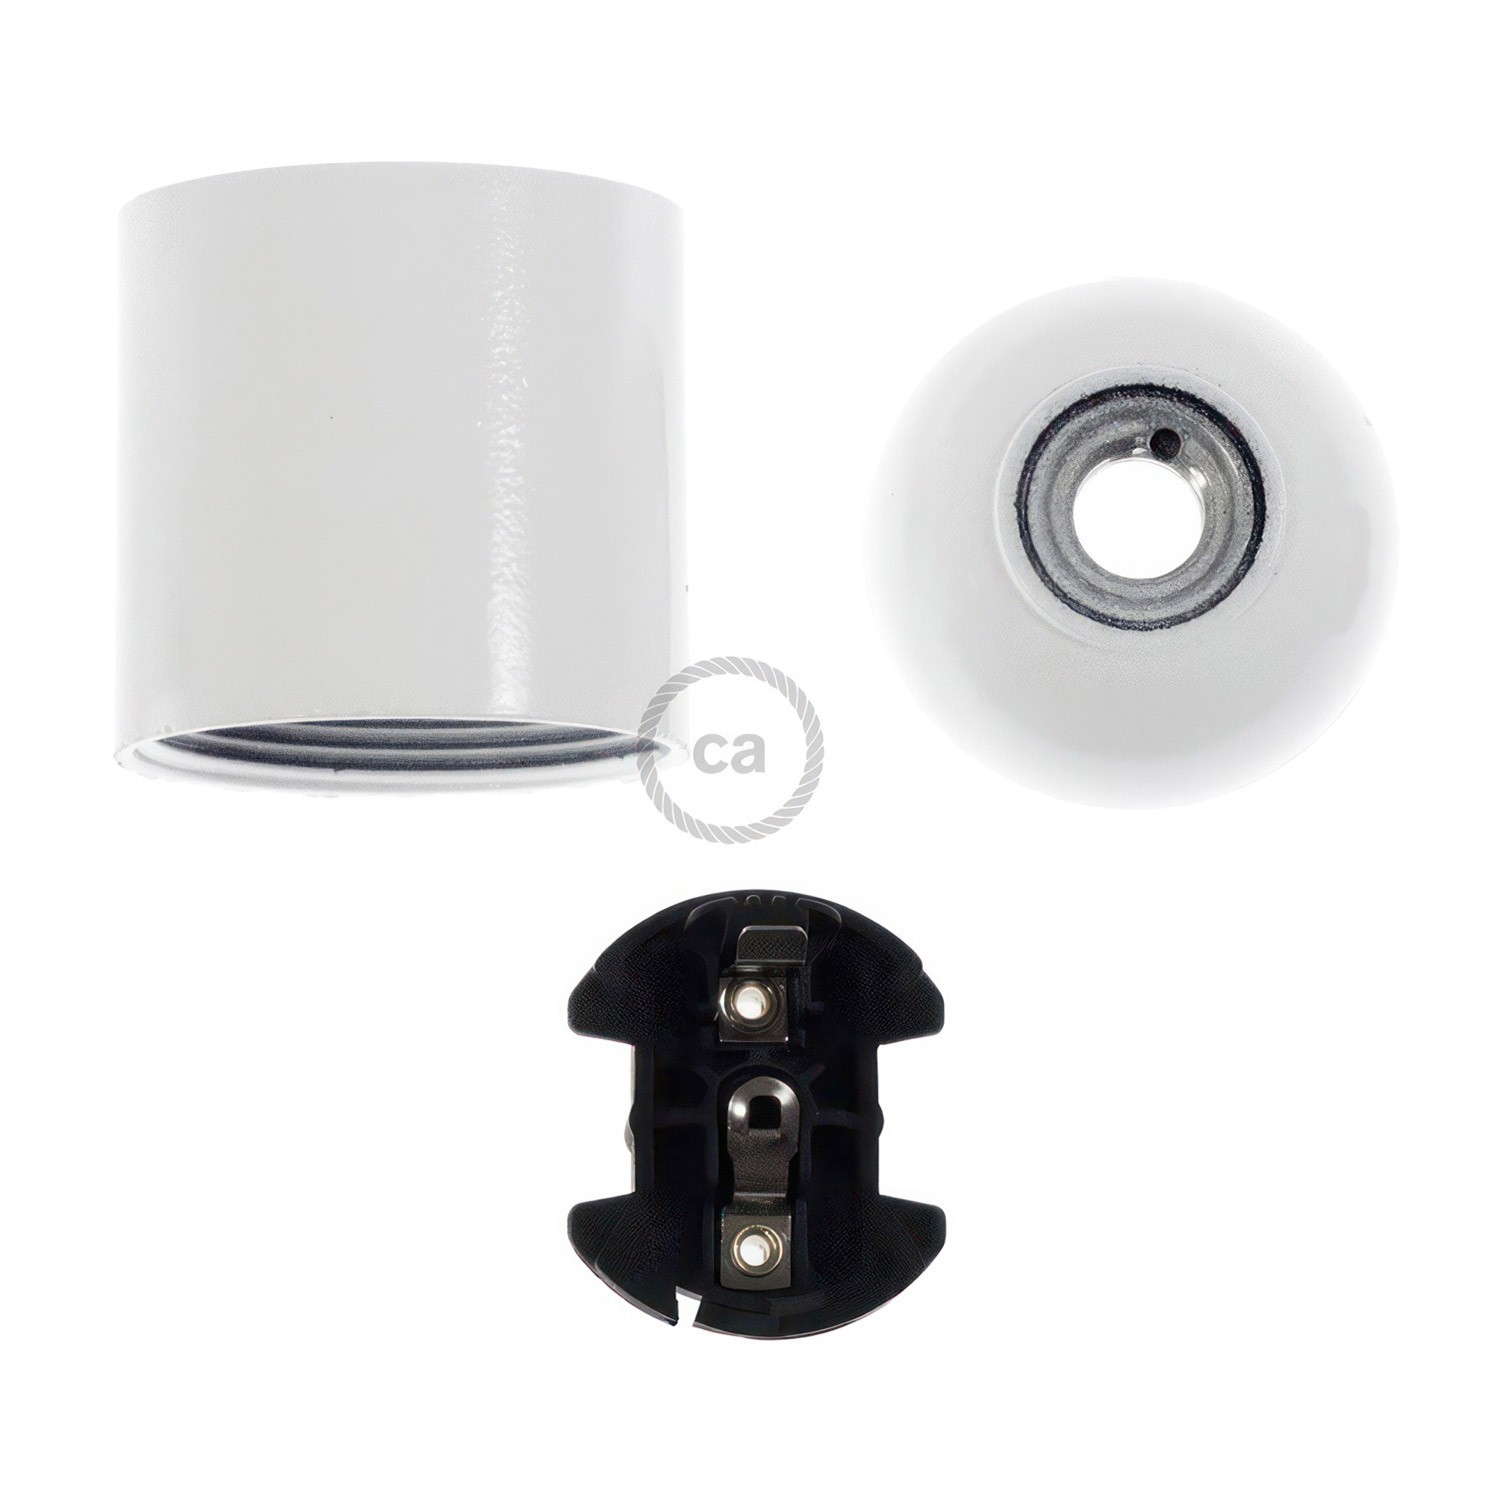 Bakelit E27 lampeholder kit